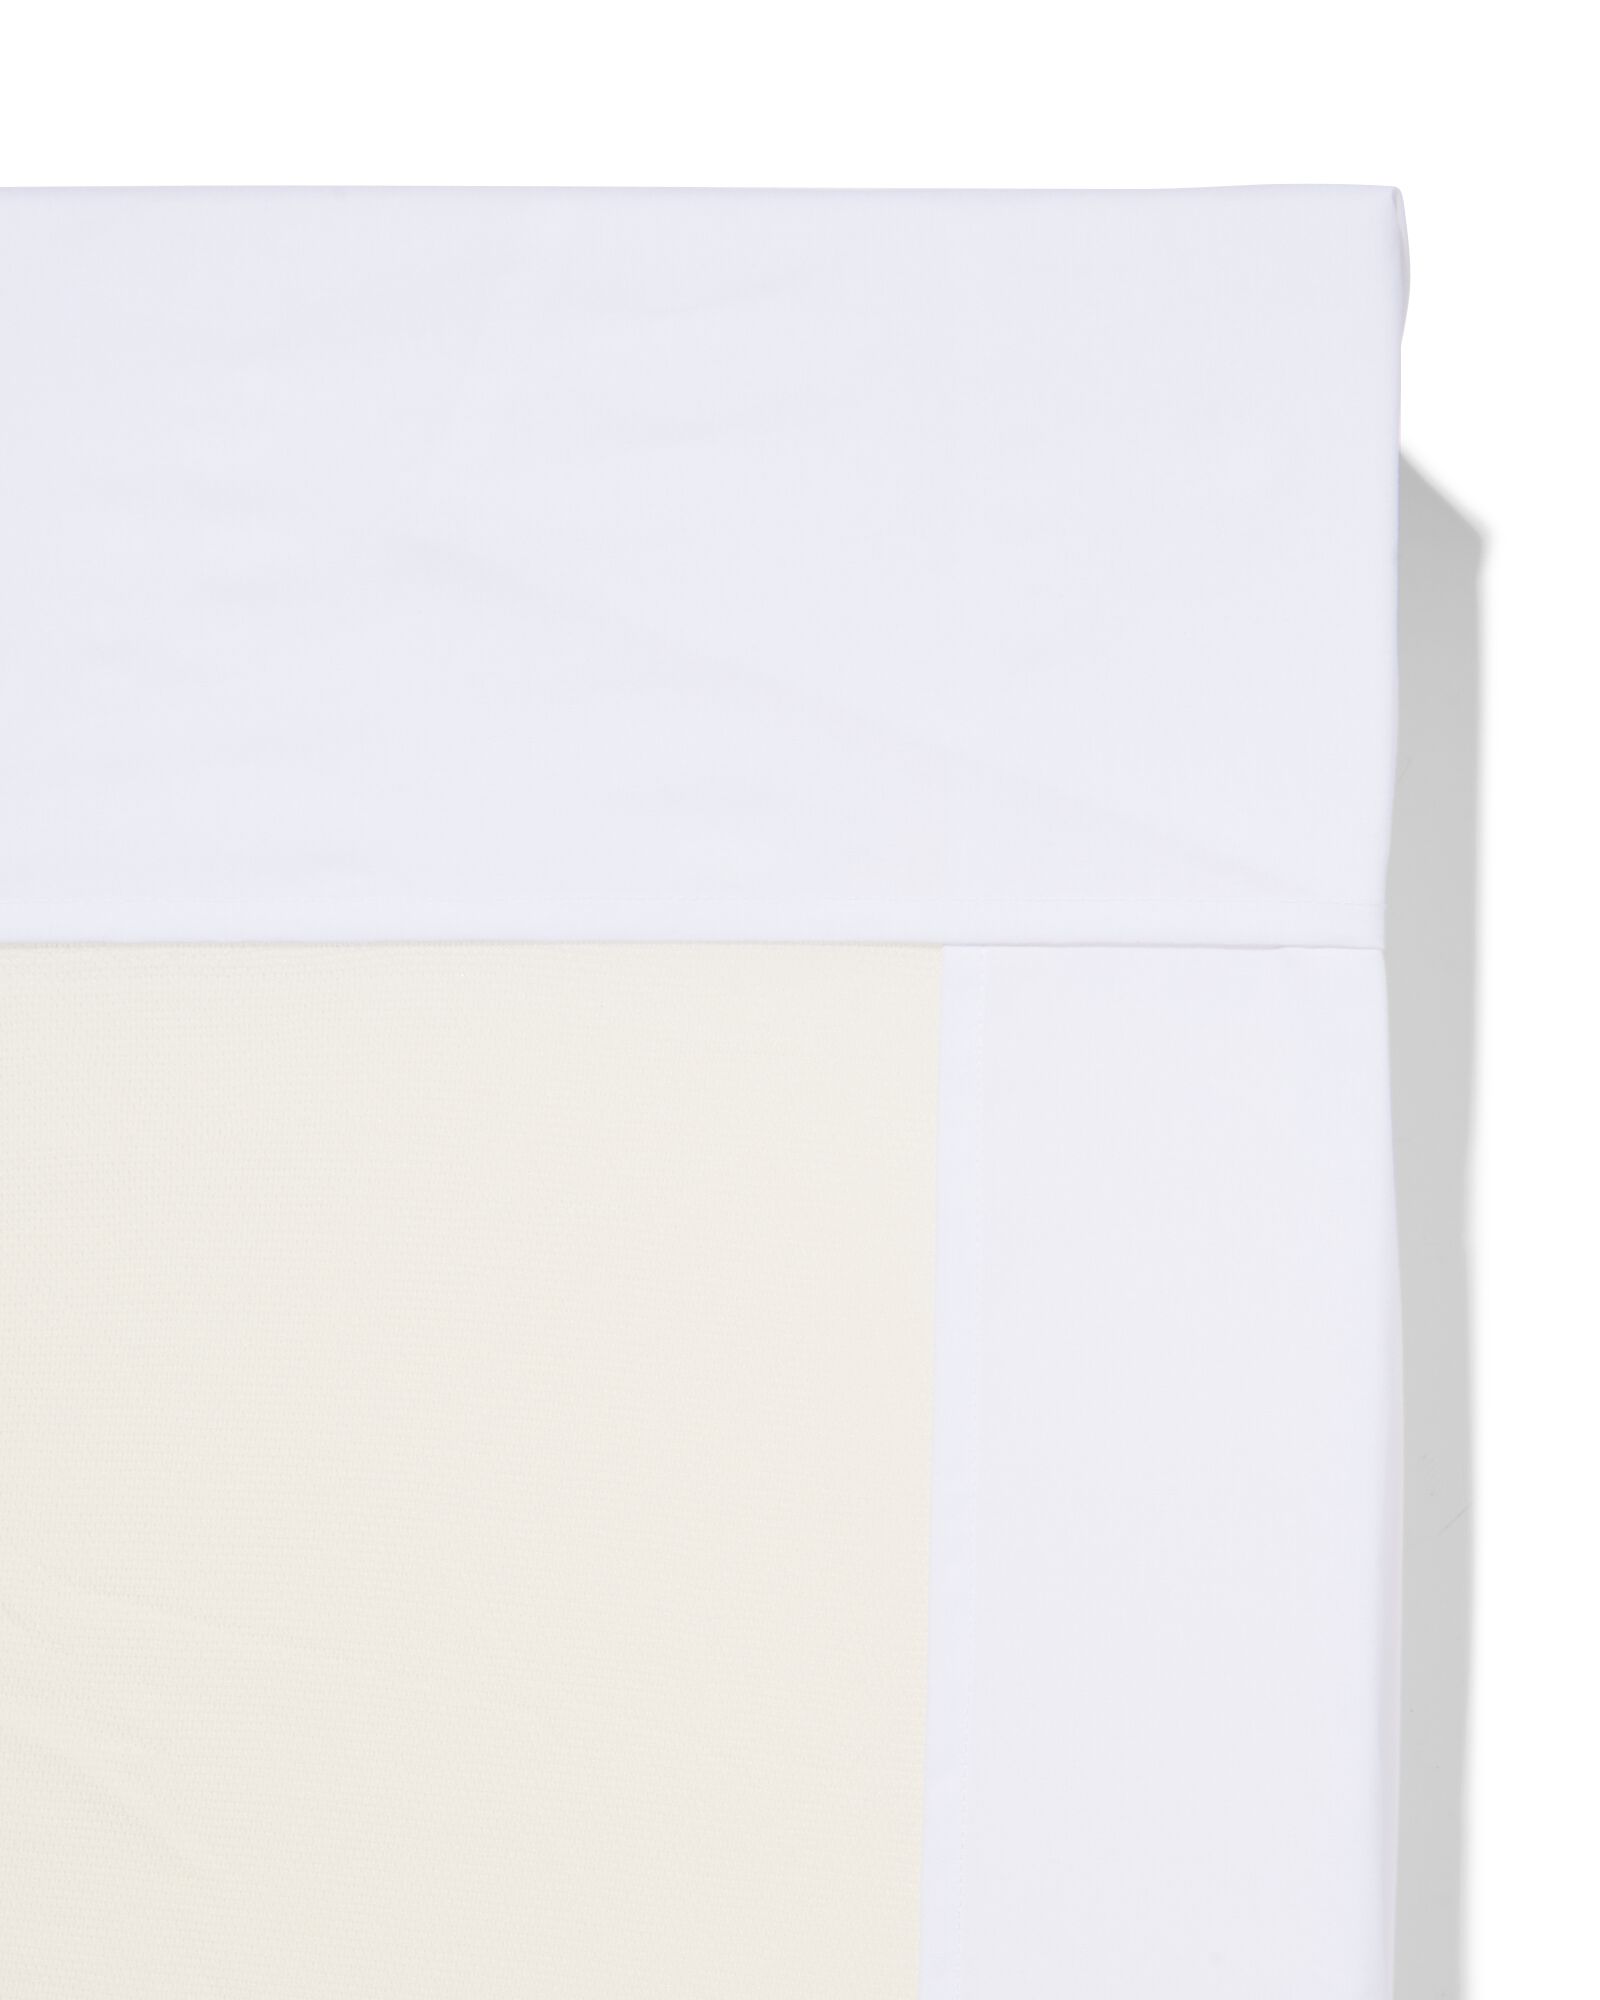 drap coton doux 240x260 blanc - 5180134 - HEMA